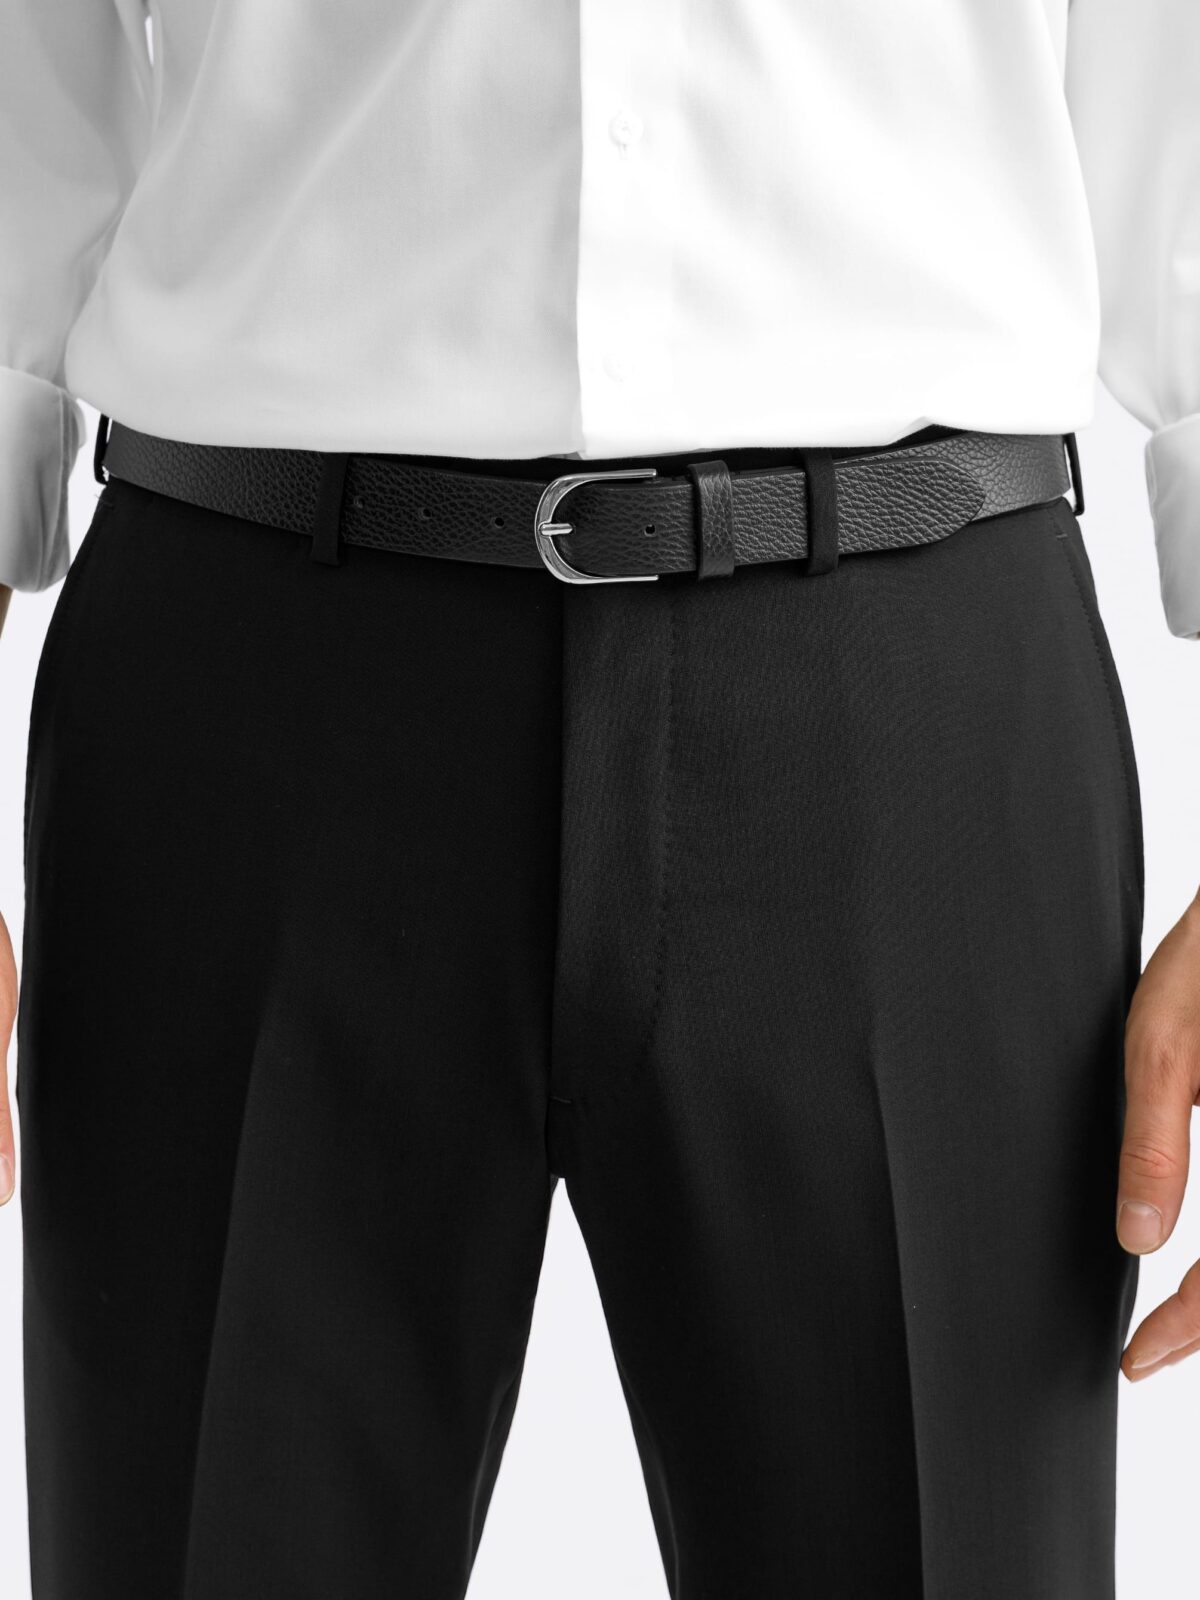 Men's Qualitas Unhemmed Front Pleat Suit Trousers, Black | Suiting | Simon  Jersey